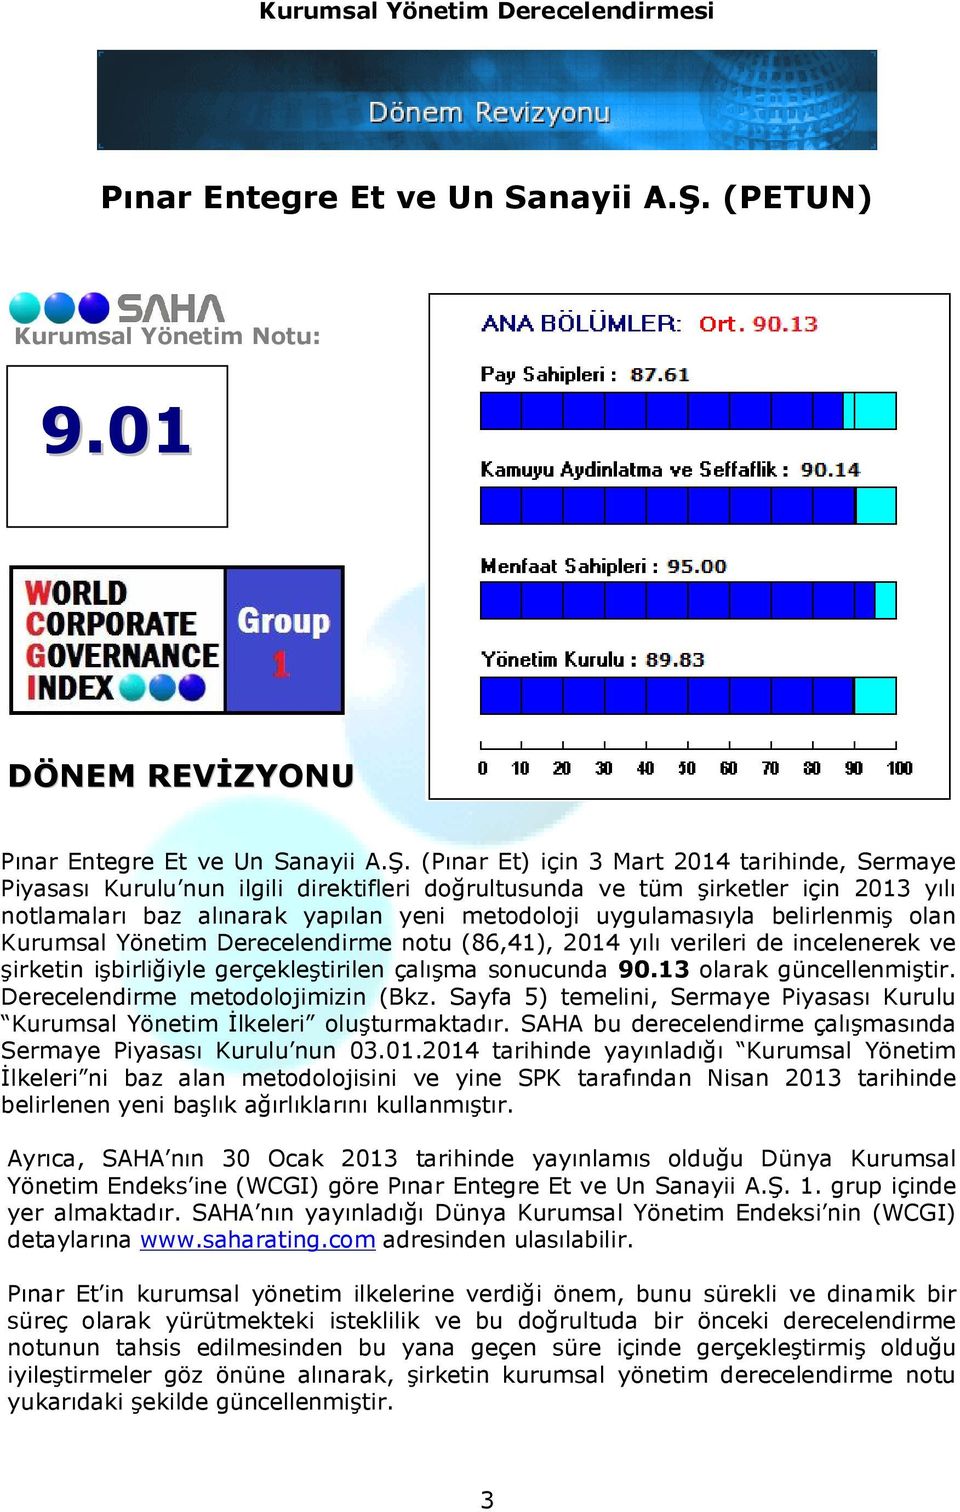 (Pınar Et) için 3 Mart 2014 tarihinde, Sermaye Piyasası Kurulu nun ilgili direktifleri doğrultusunda ve tüm şirketler için 2013 yılı notlamaları baz alınarak yapılan yeni metodoloji uygulamasıyla